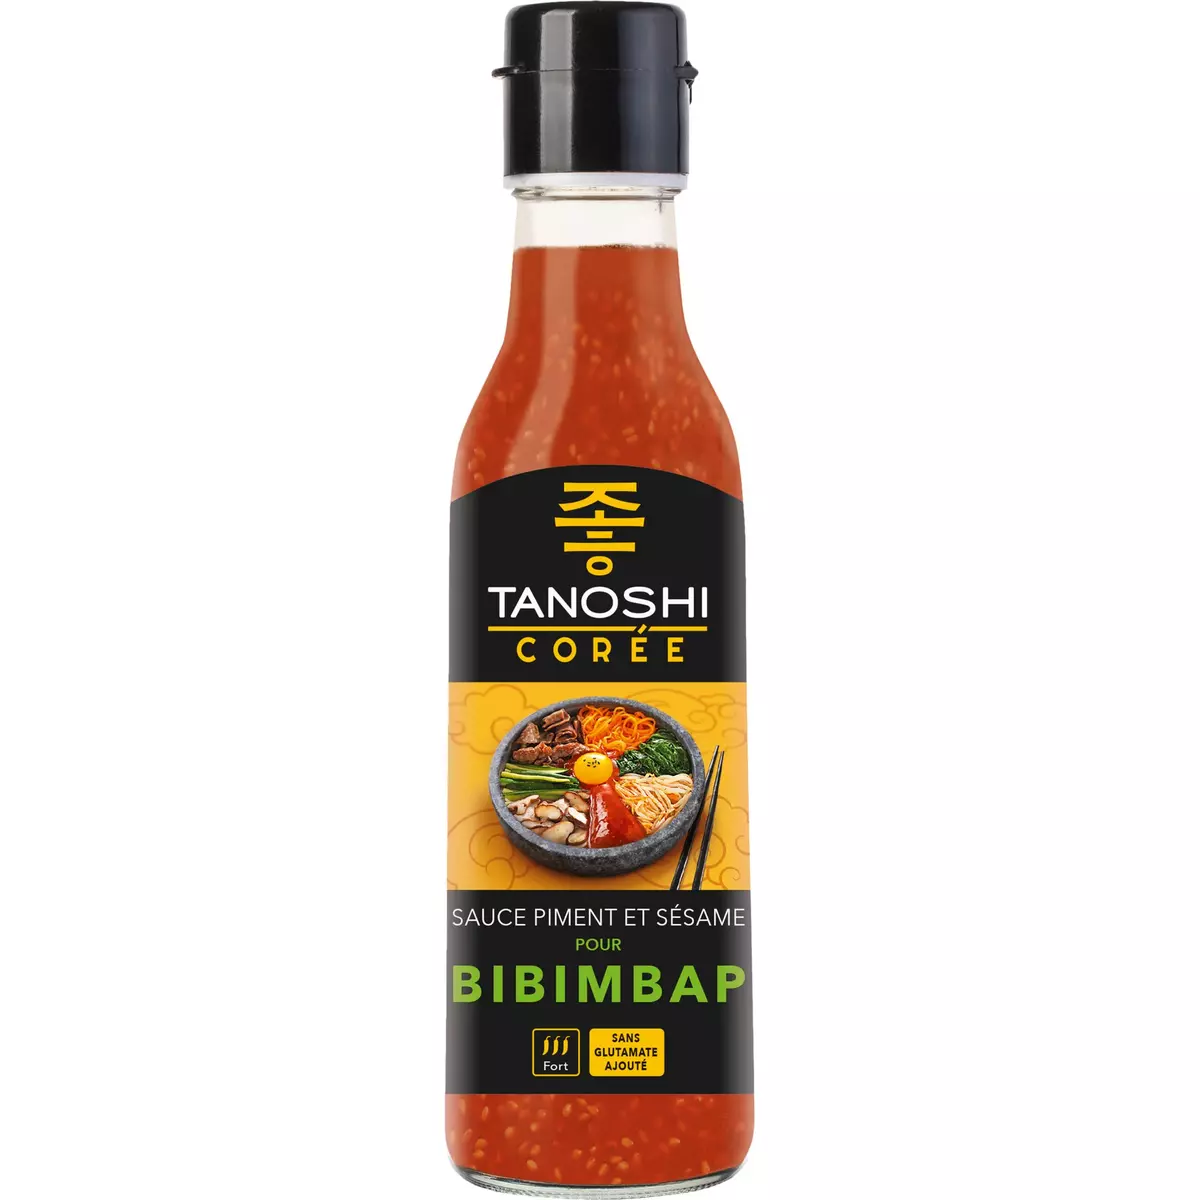 TANOSHI Sauce piment et sésame pour Bibimbap 225ml